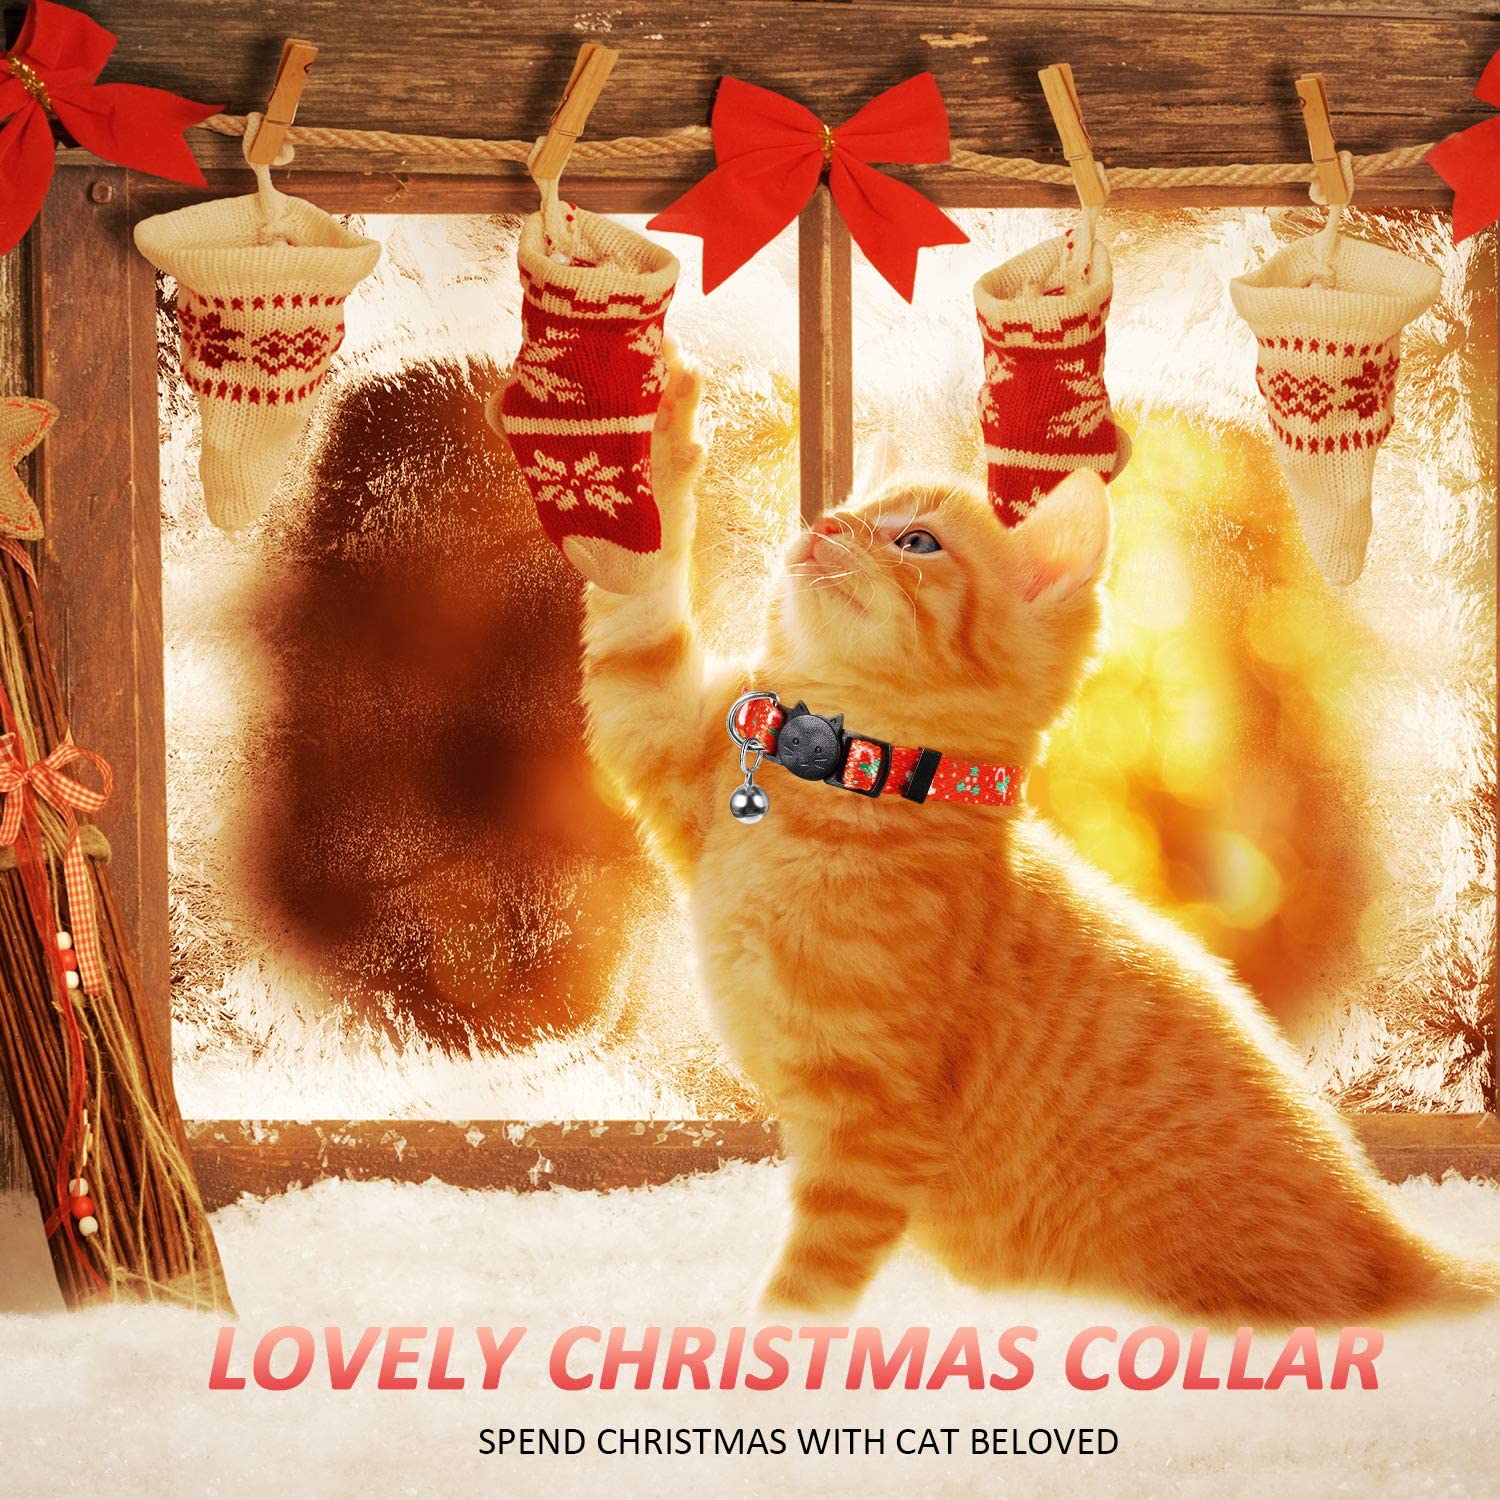  4 Piezas Collares de Gato de Navidad con Campana Collares de Gato Separables Ajustables Decoración Navideña del Gatito para Accesorios de Gato de Fiesta de Navidad 